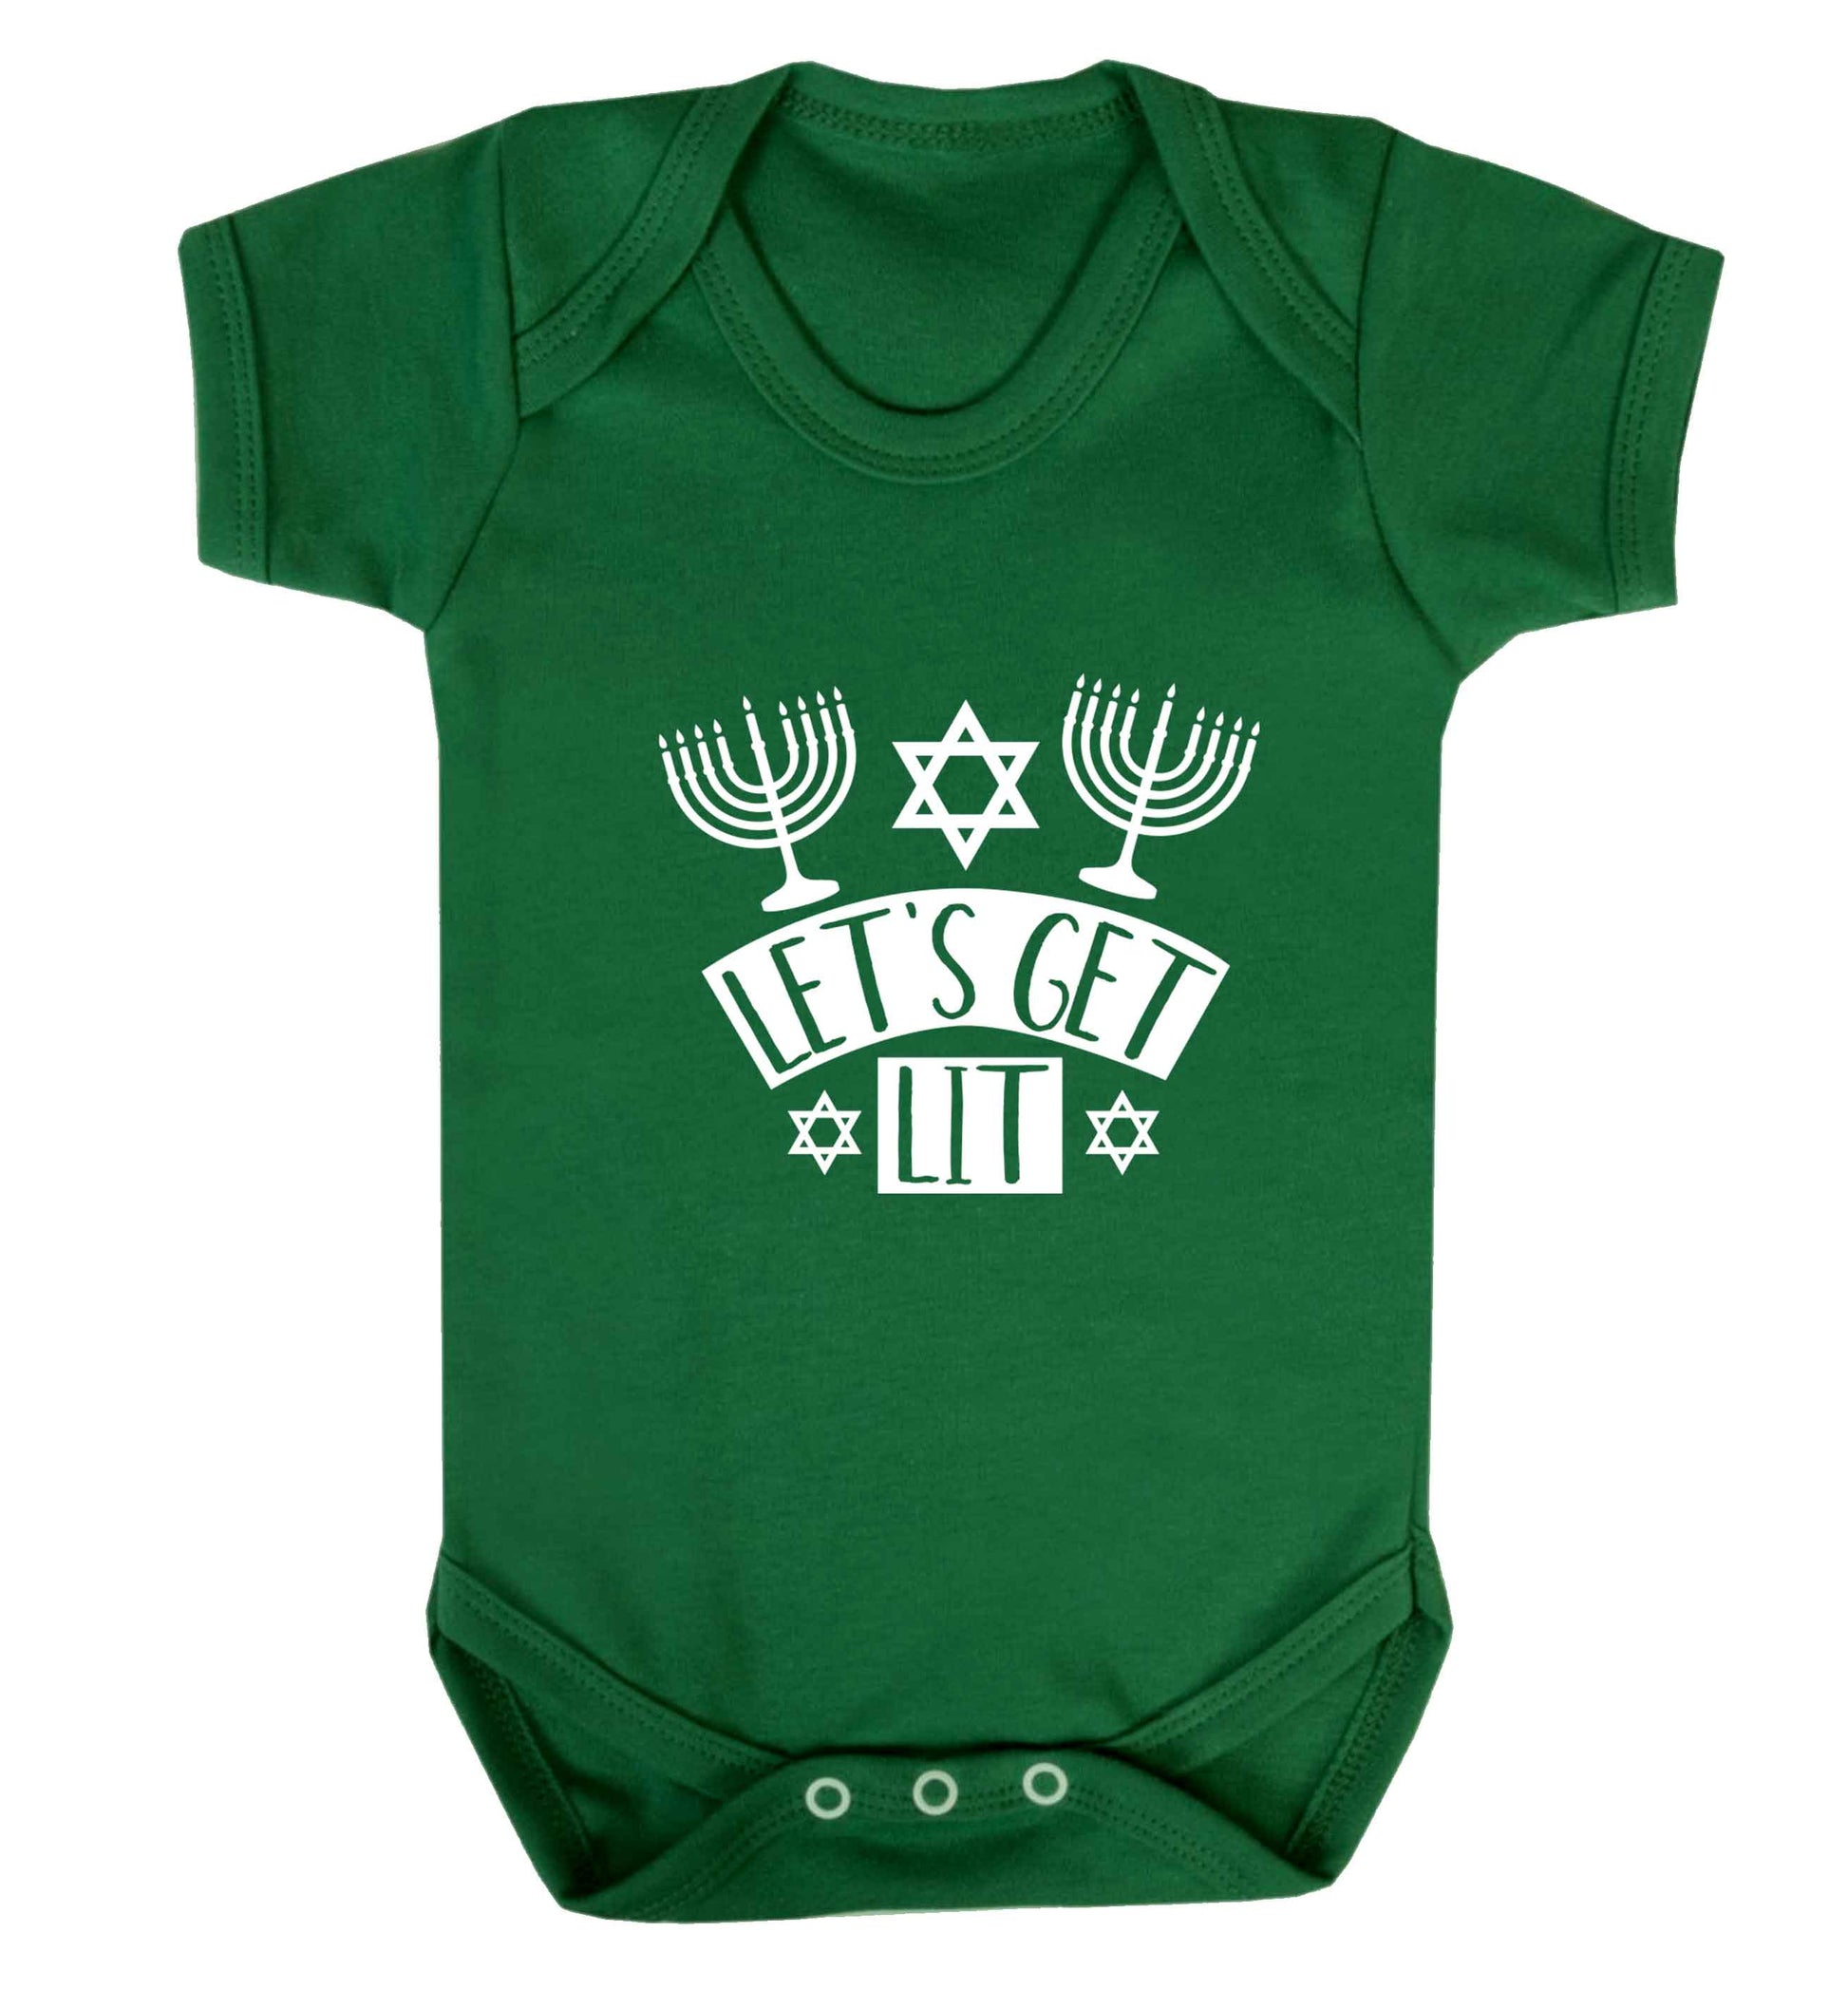 Let's get lit baby vest green 18-24 months